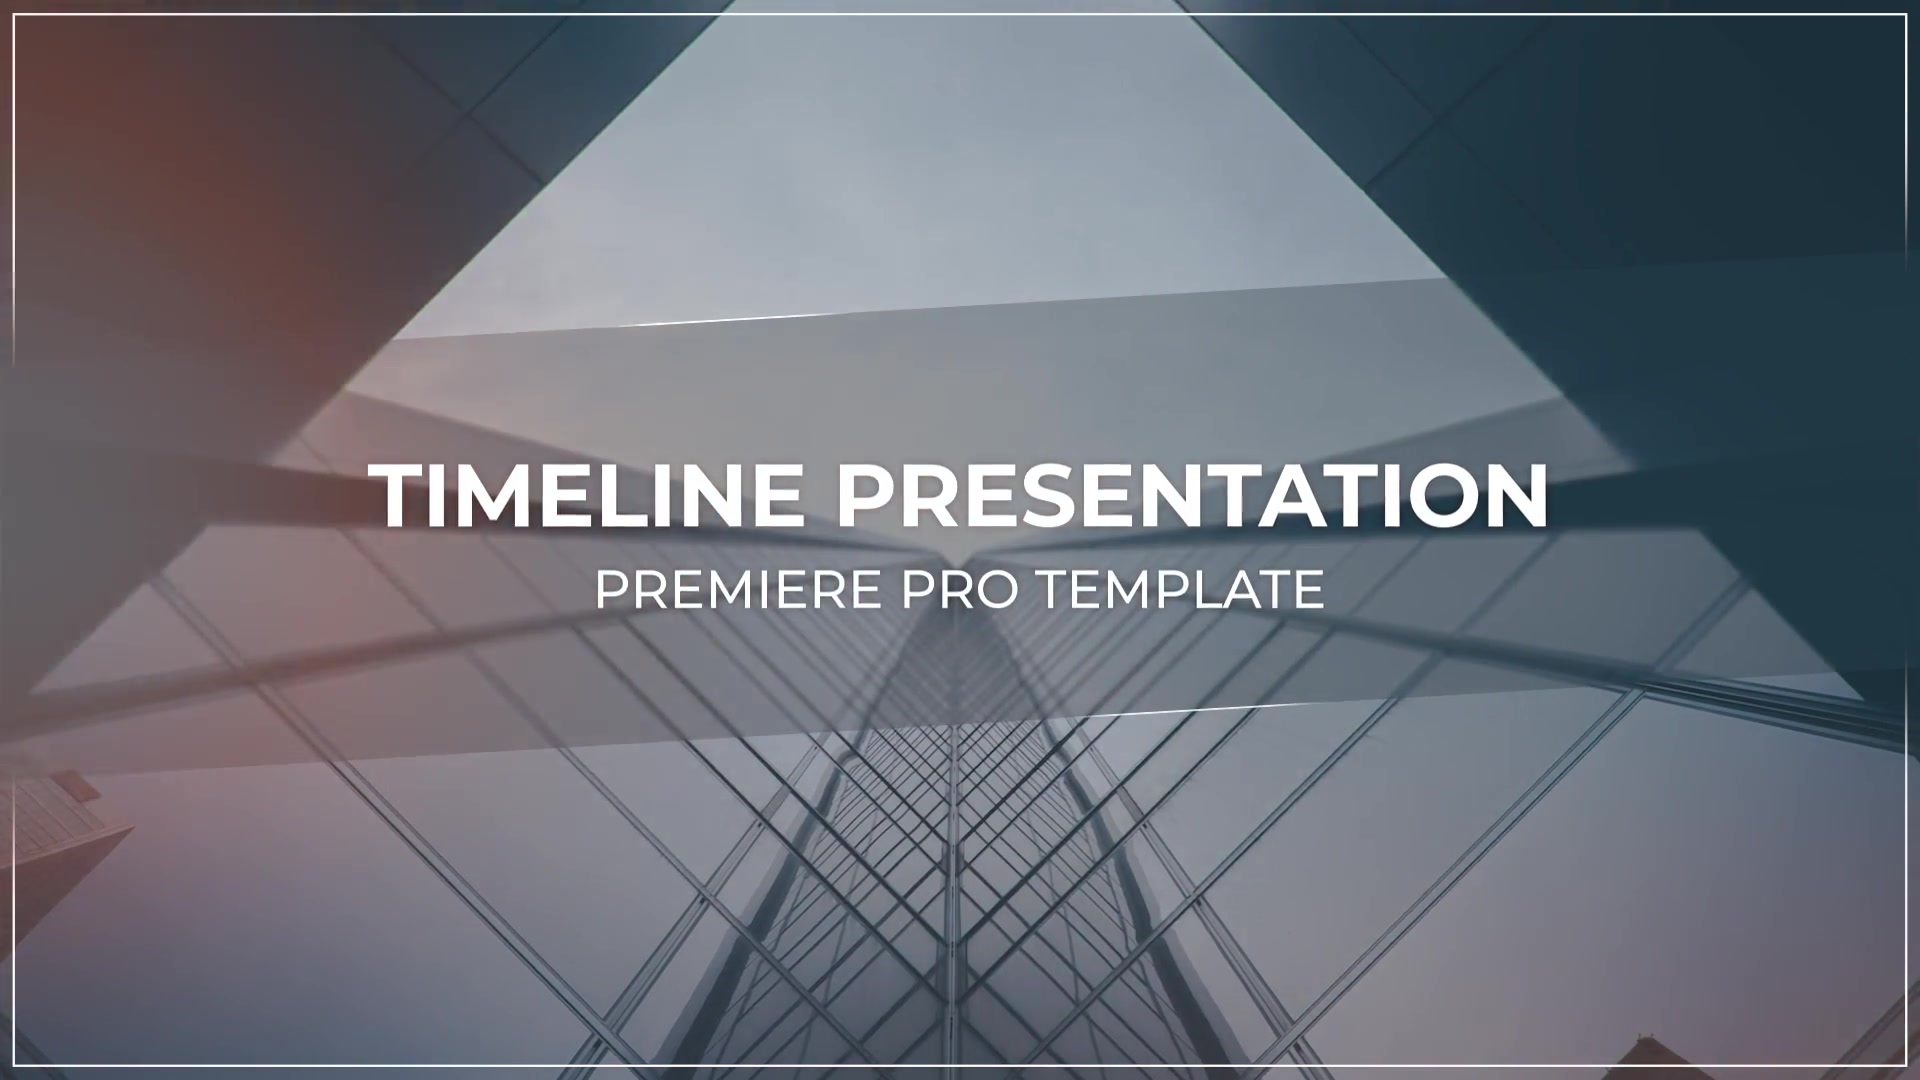 Corporate Timeline Videohive 25947747 Premiere Pro Image 12